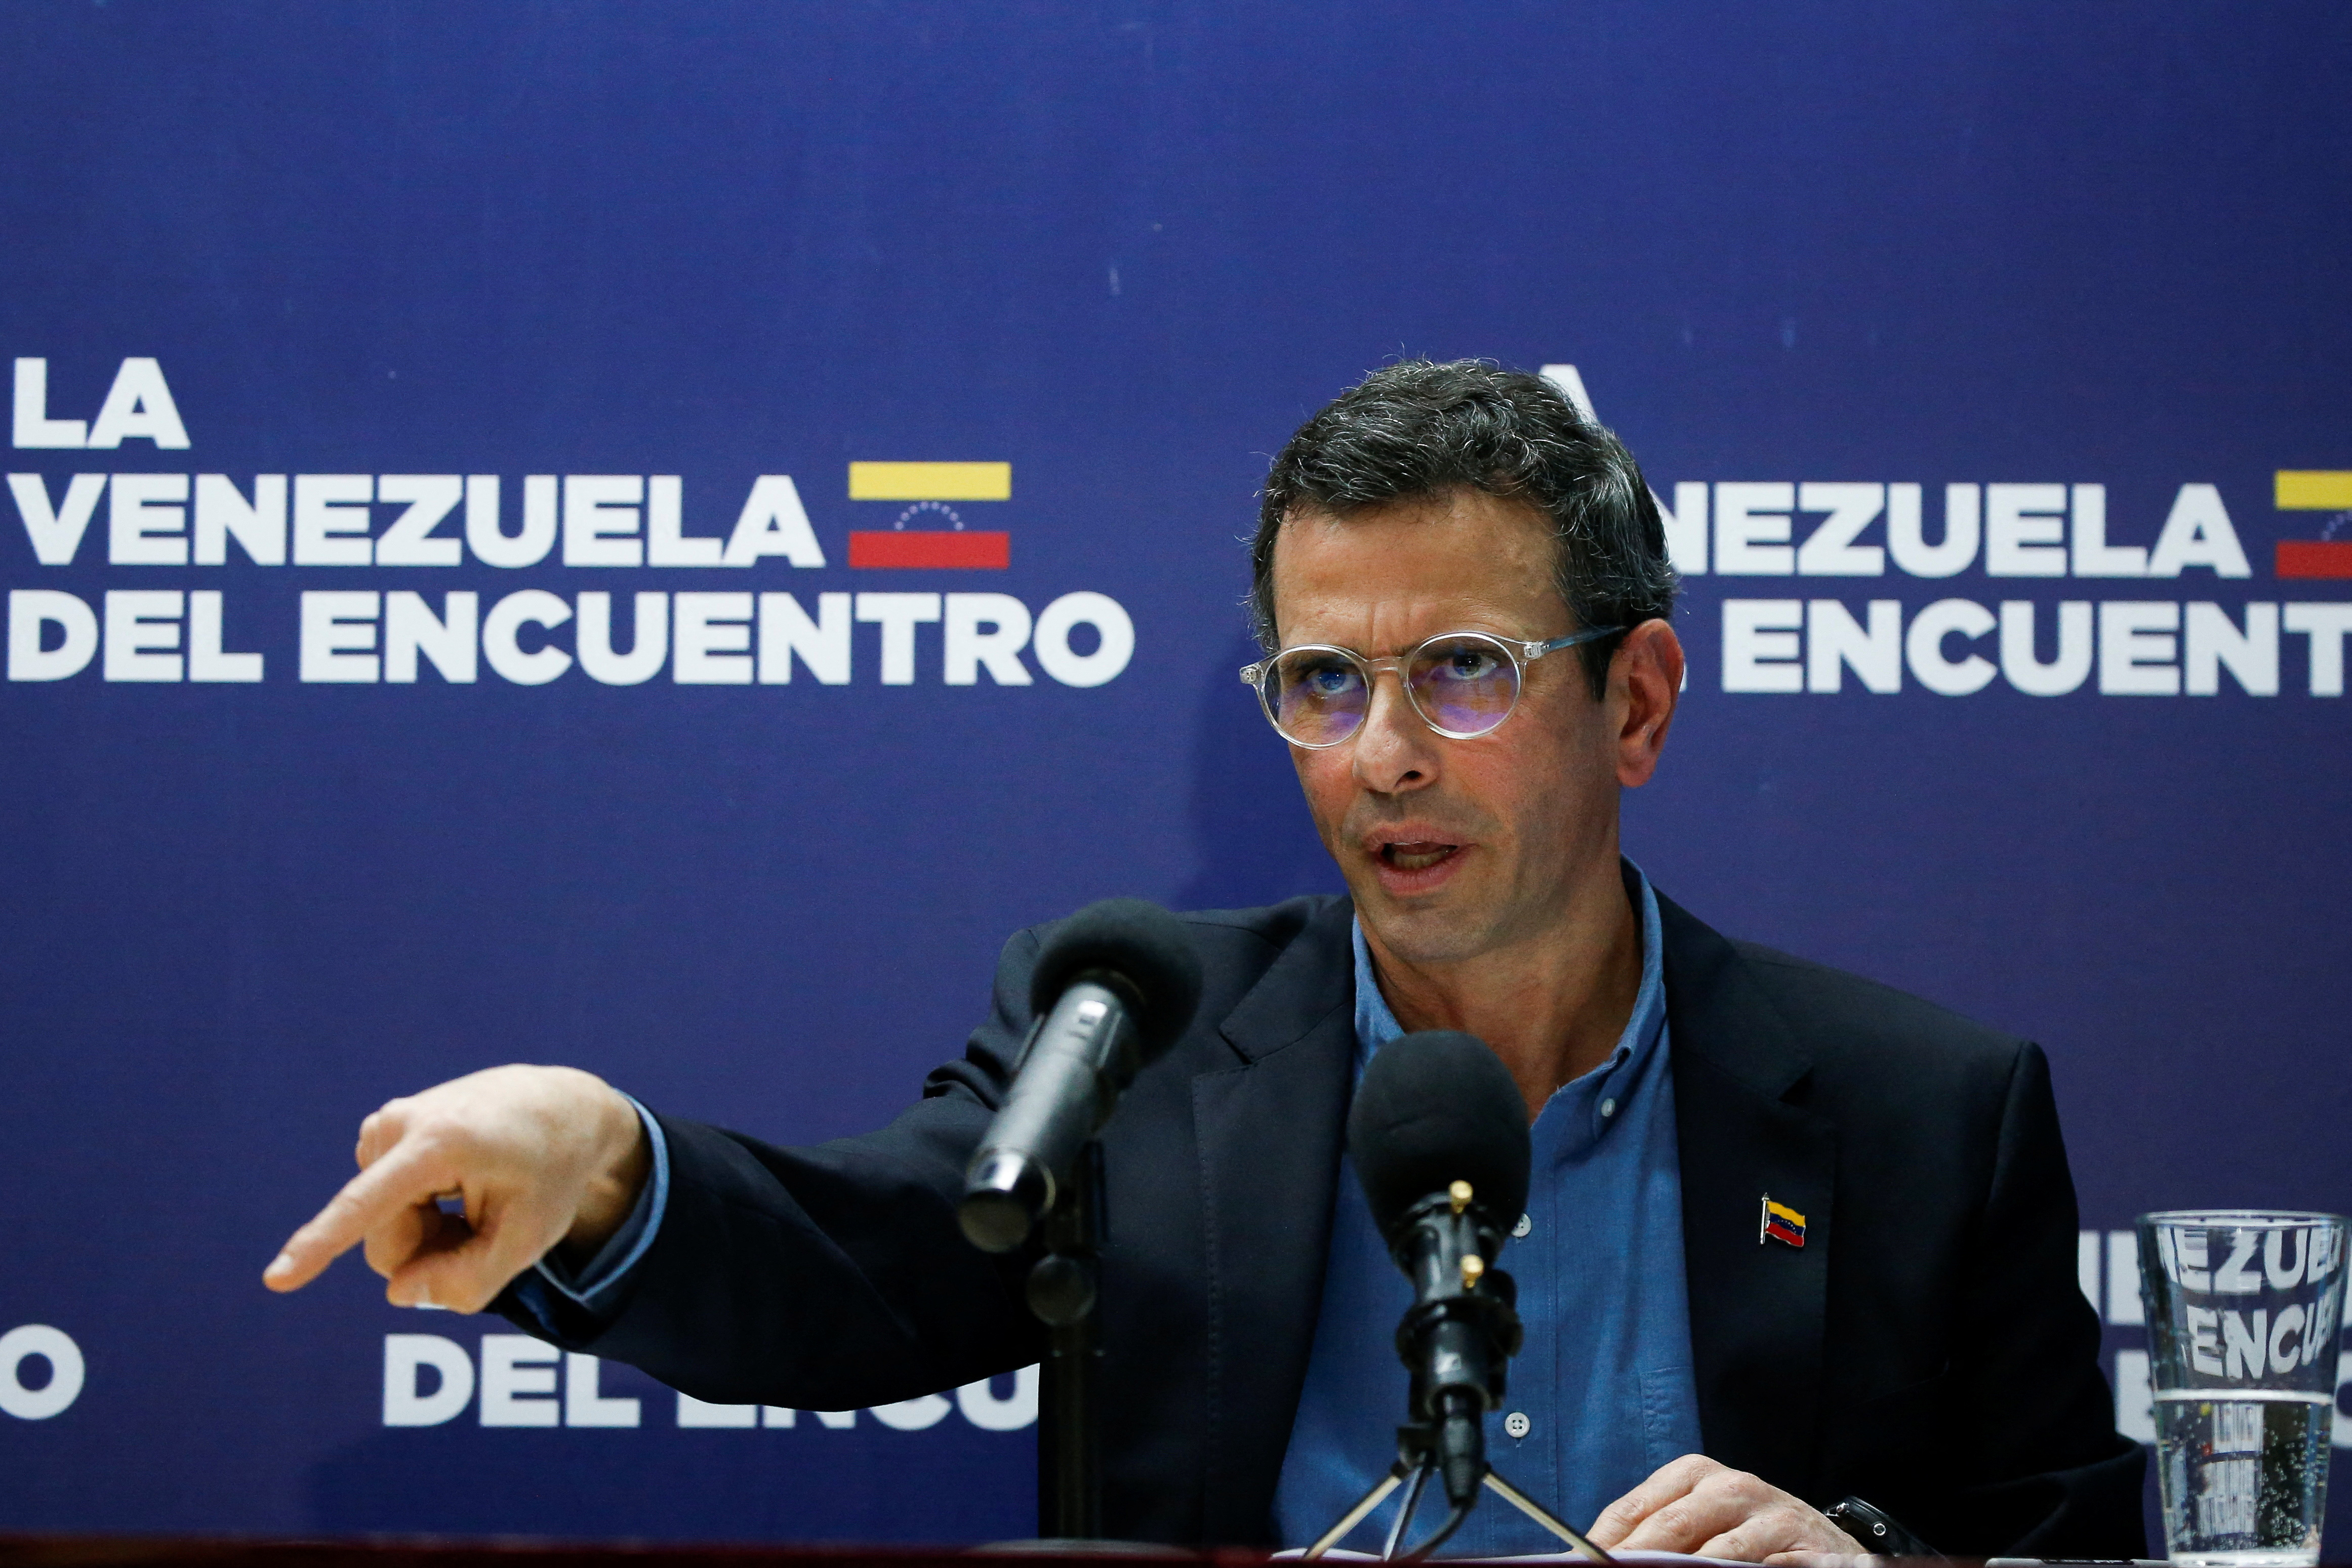 La oposición condenó los hechos de corrupción por parte de funcionarios chavistas: “Es la verdadera causa de la ruina de Venezuela”